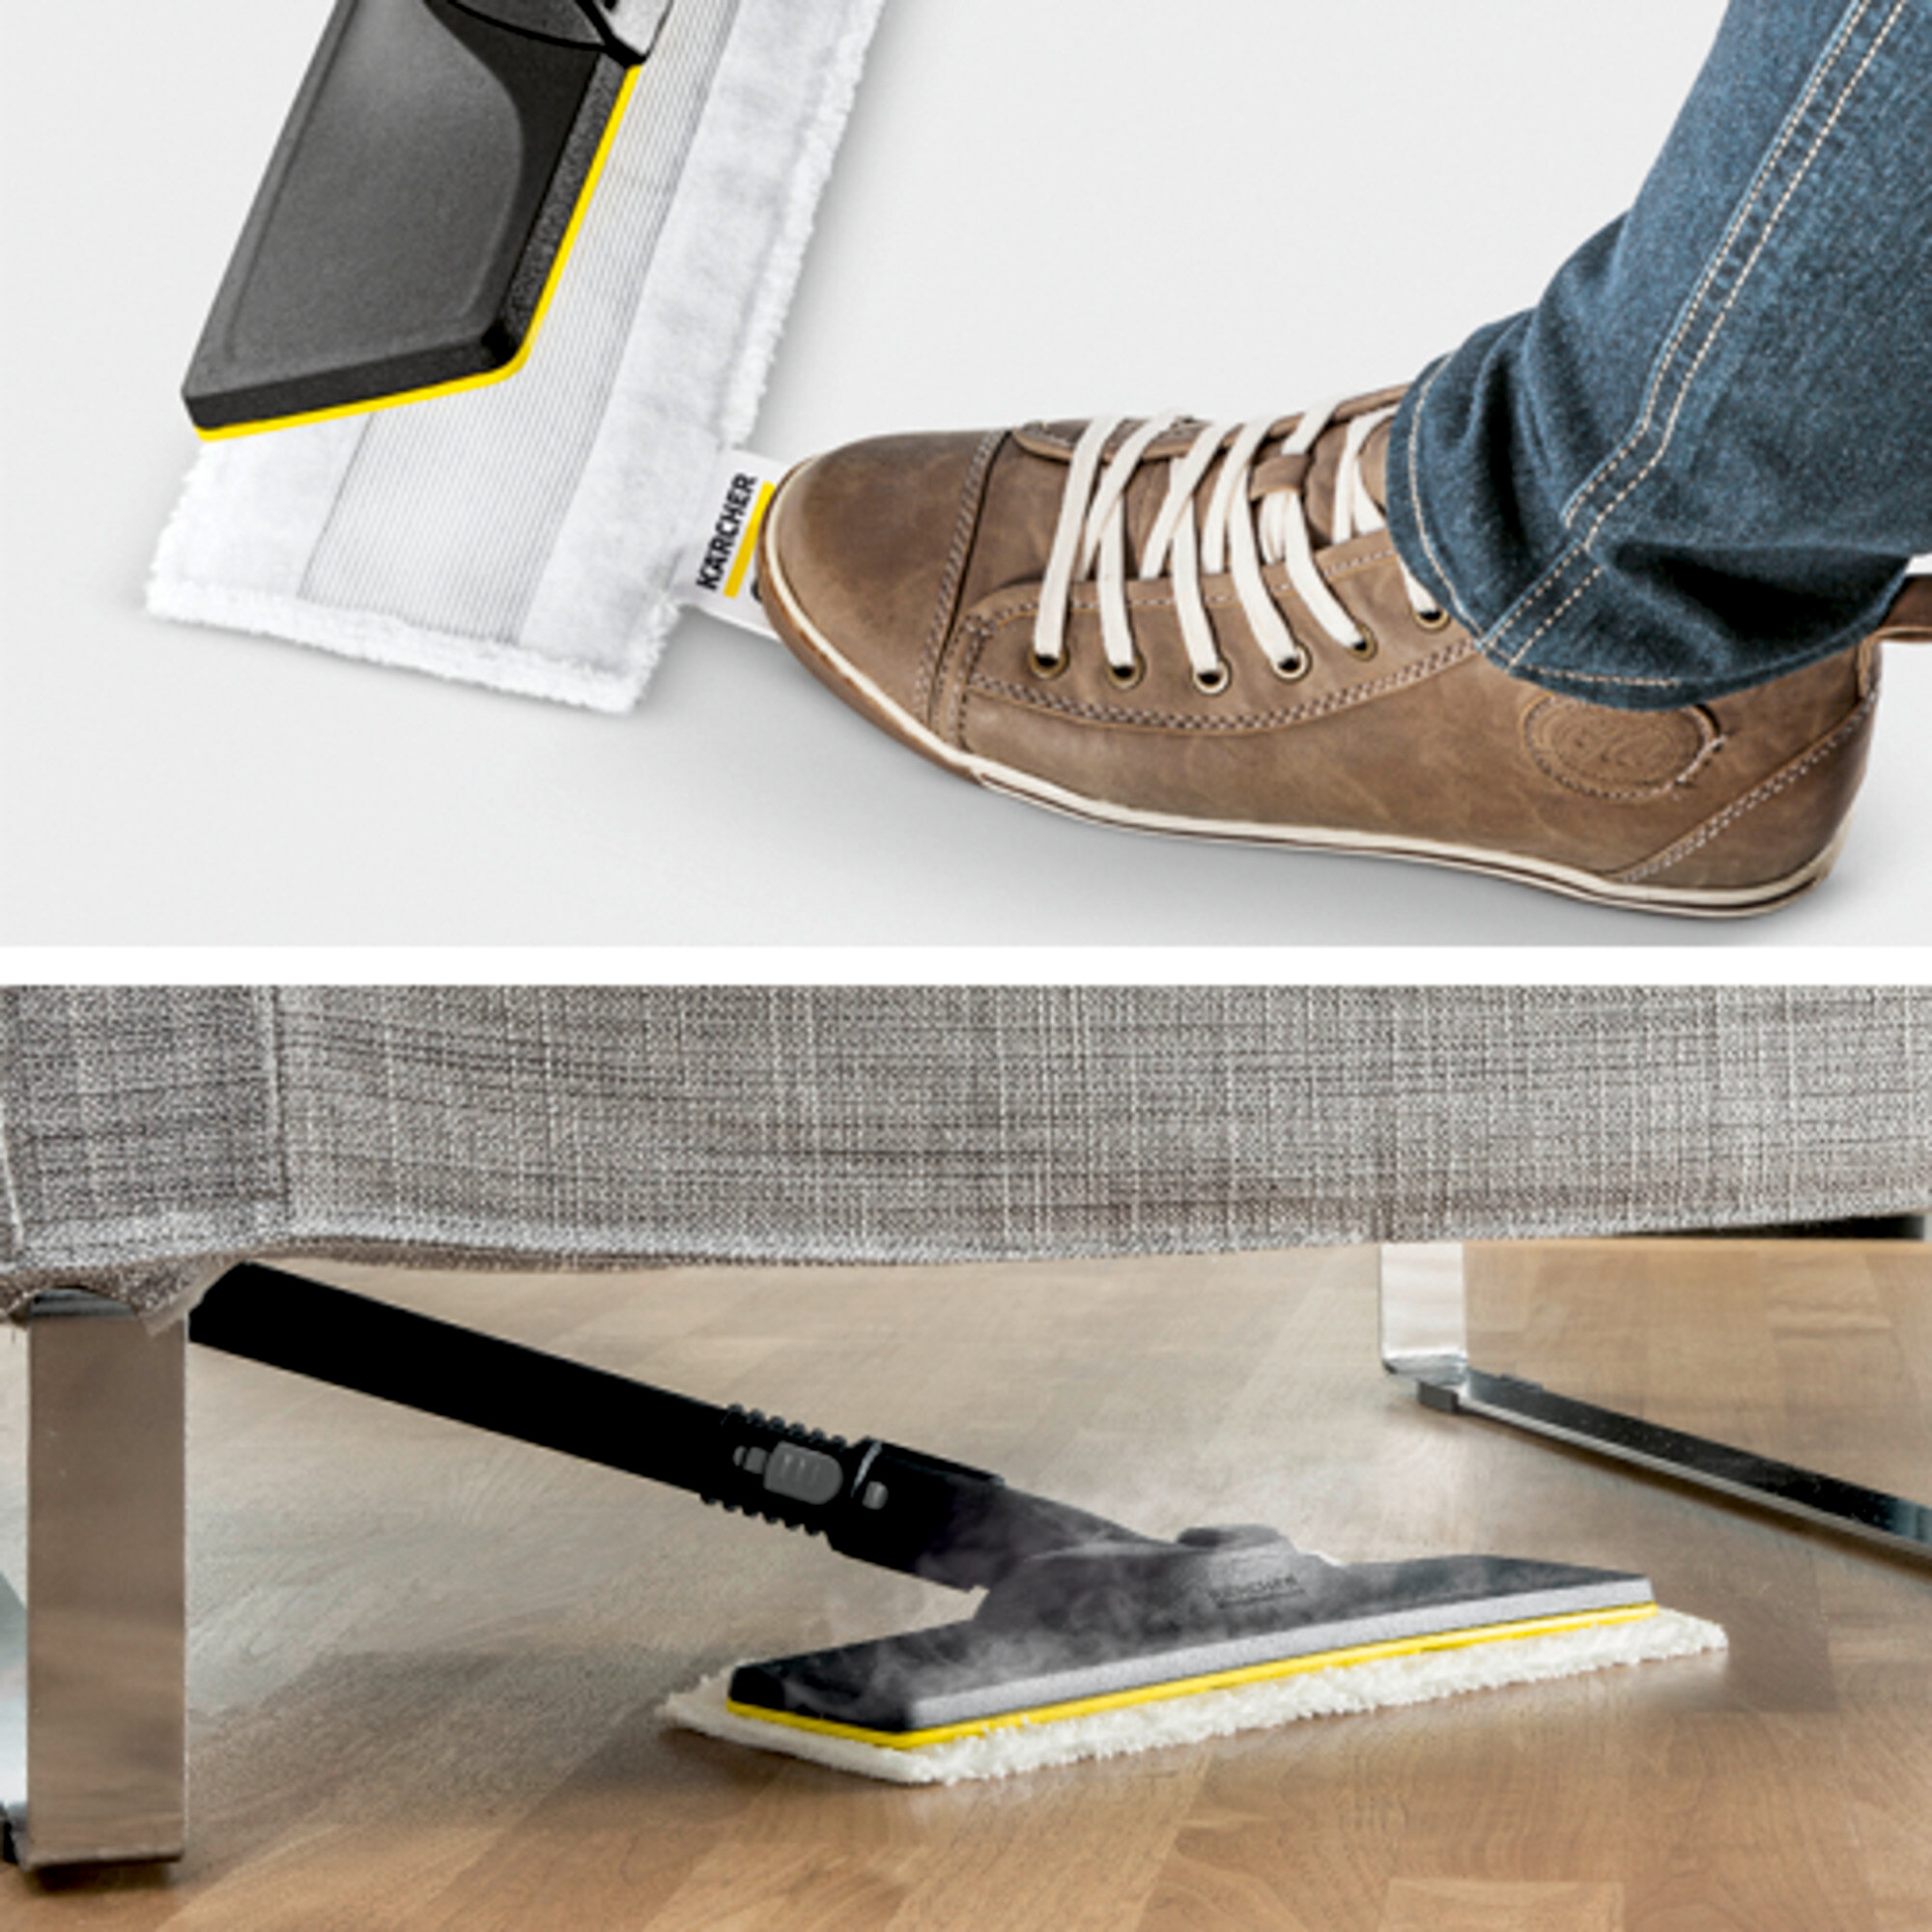  SC 4 EasyFix Premium: Põrandapuhastuskomplekt EasyFix, kuhu kuuluvad painduva ühendusega põrandaotsak ning mugav takjapaelkinnitus põrandalapi jaoks.